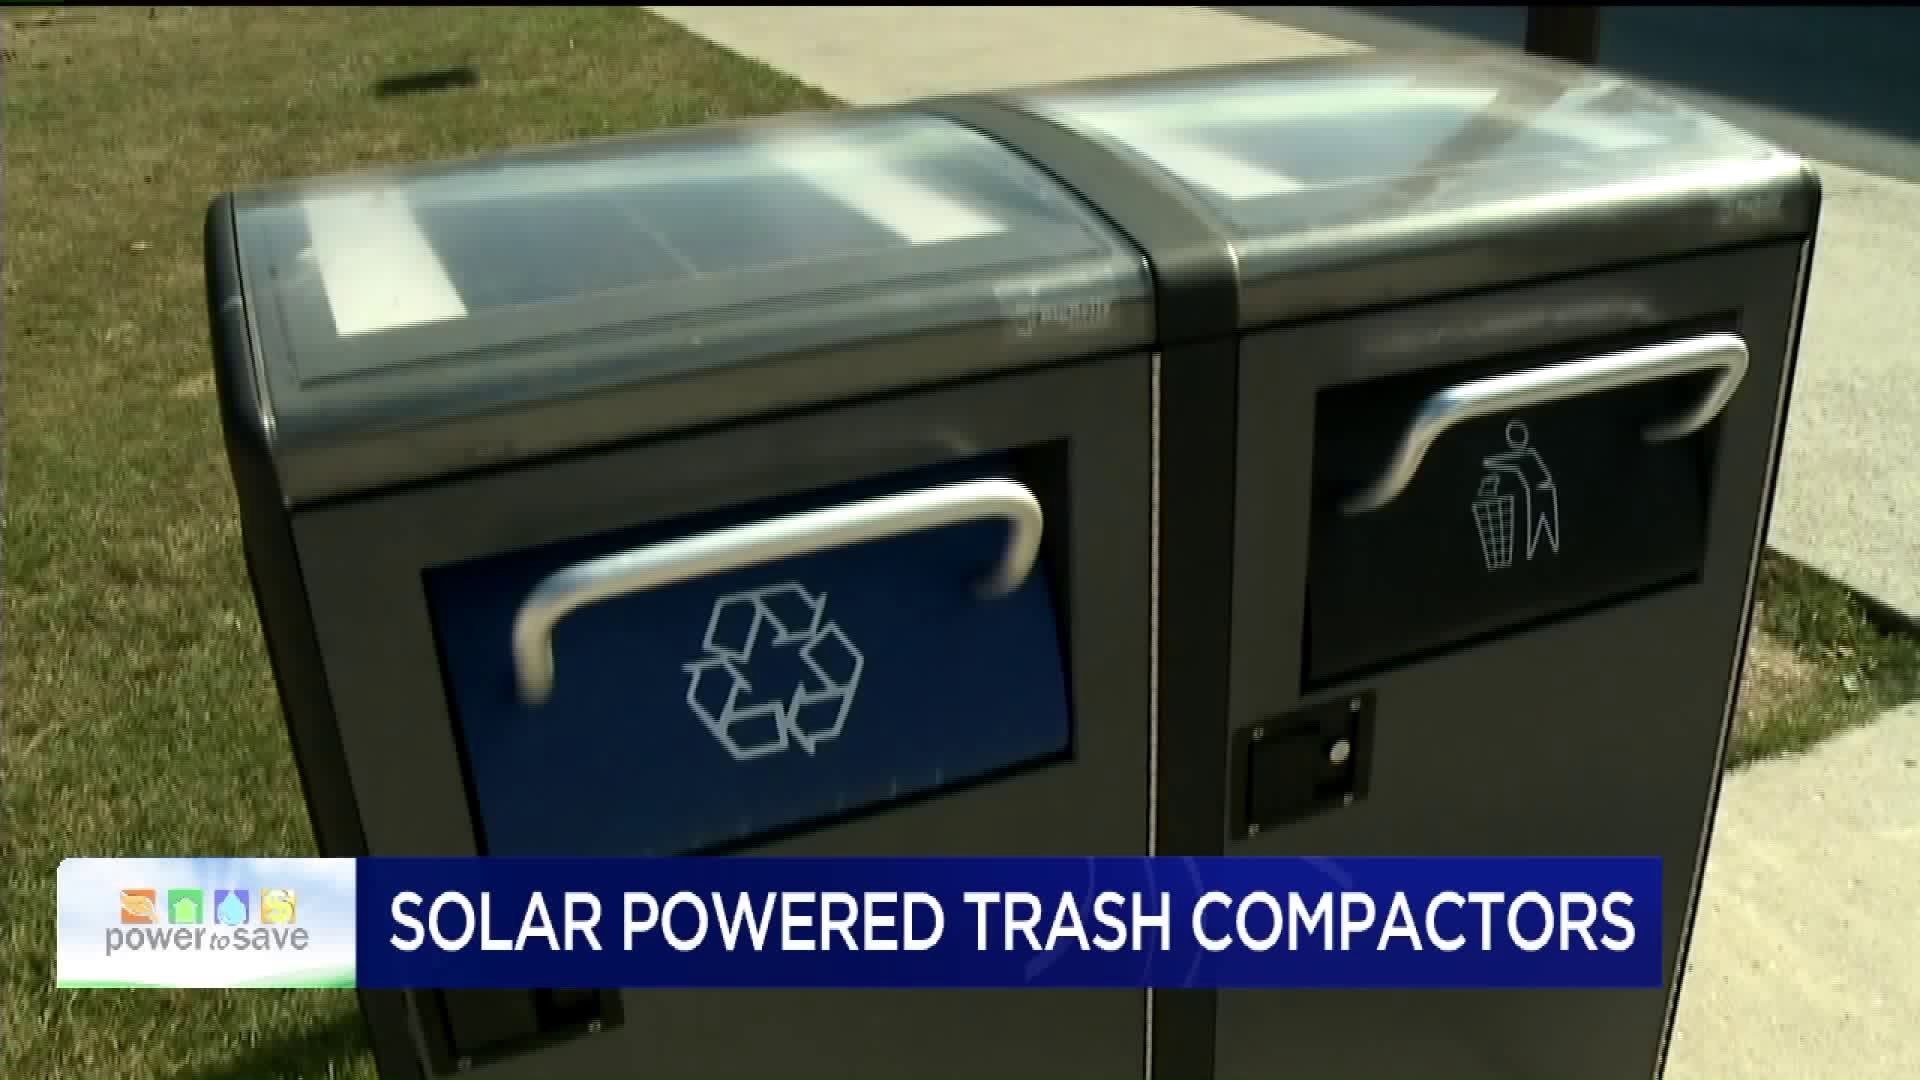 Solar-powered Trash Compactors at ESU